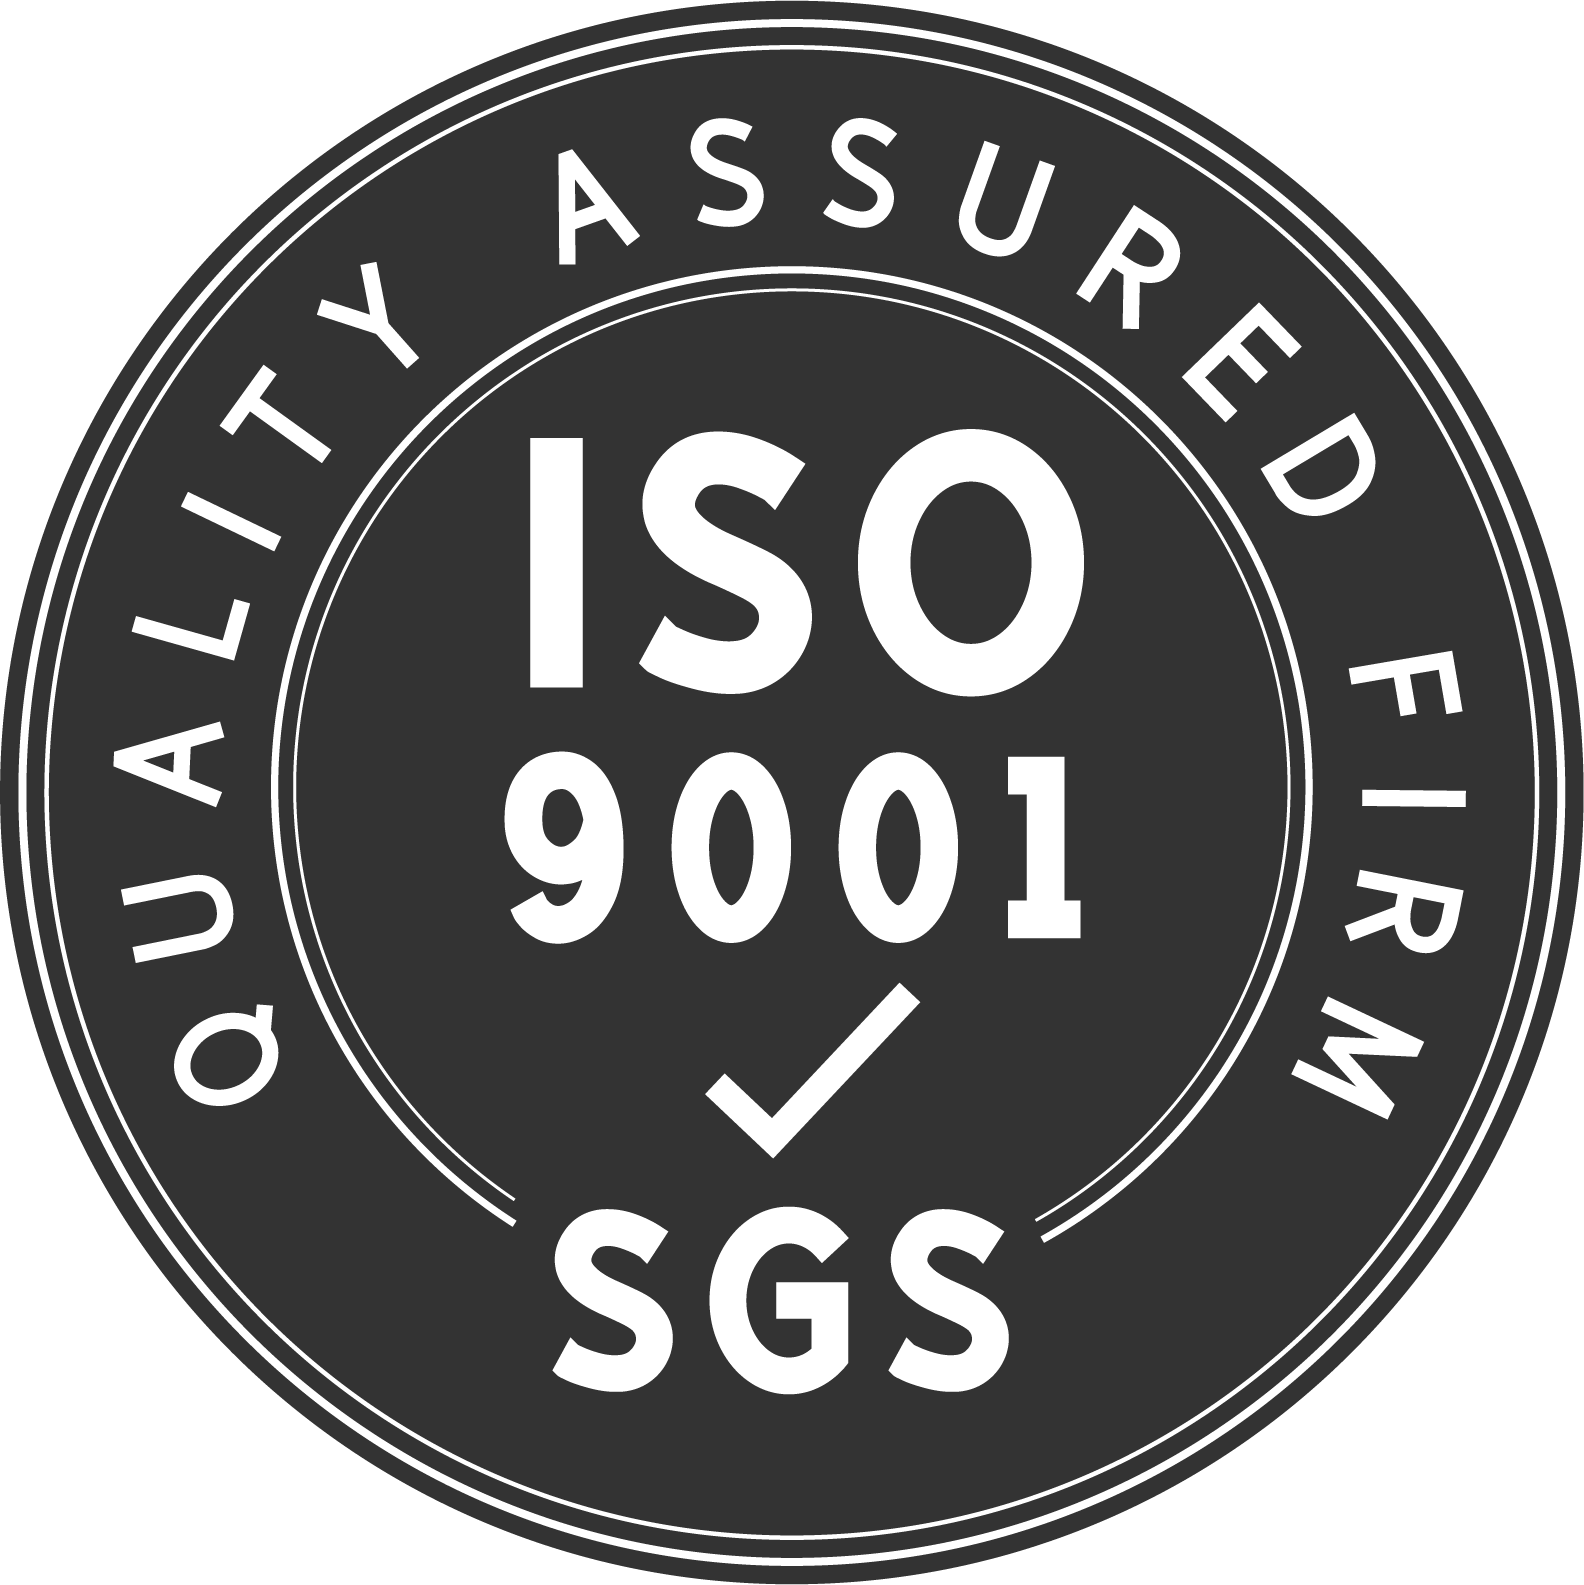 โรงงานของเราเป็นผู้ผลิตสินค้าคุณภาพสูงที่ได้รับการรับรองมาตรฐาน ISO9001:2005